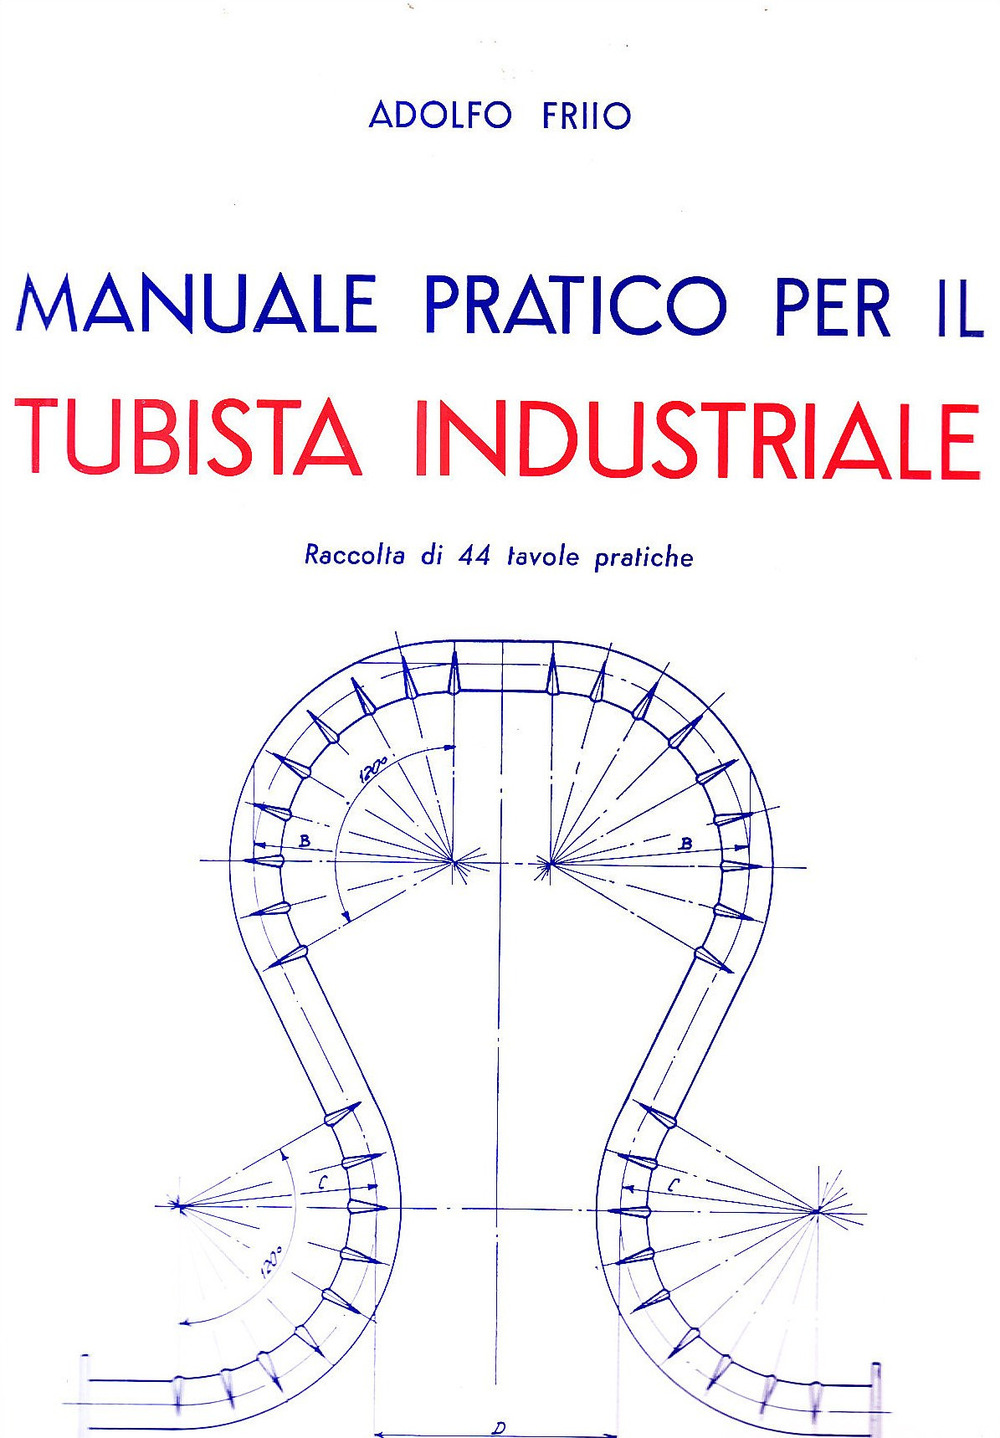 Manuale pratico per il tubista industriale - Friio A. - Foto 1 di 1